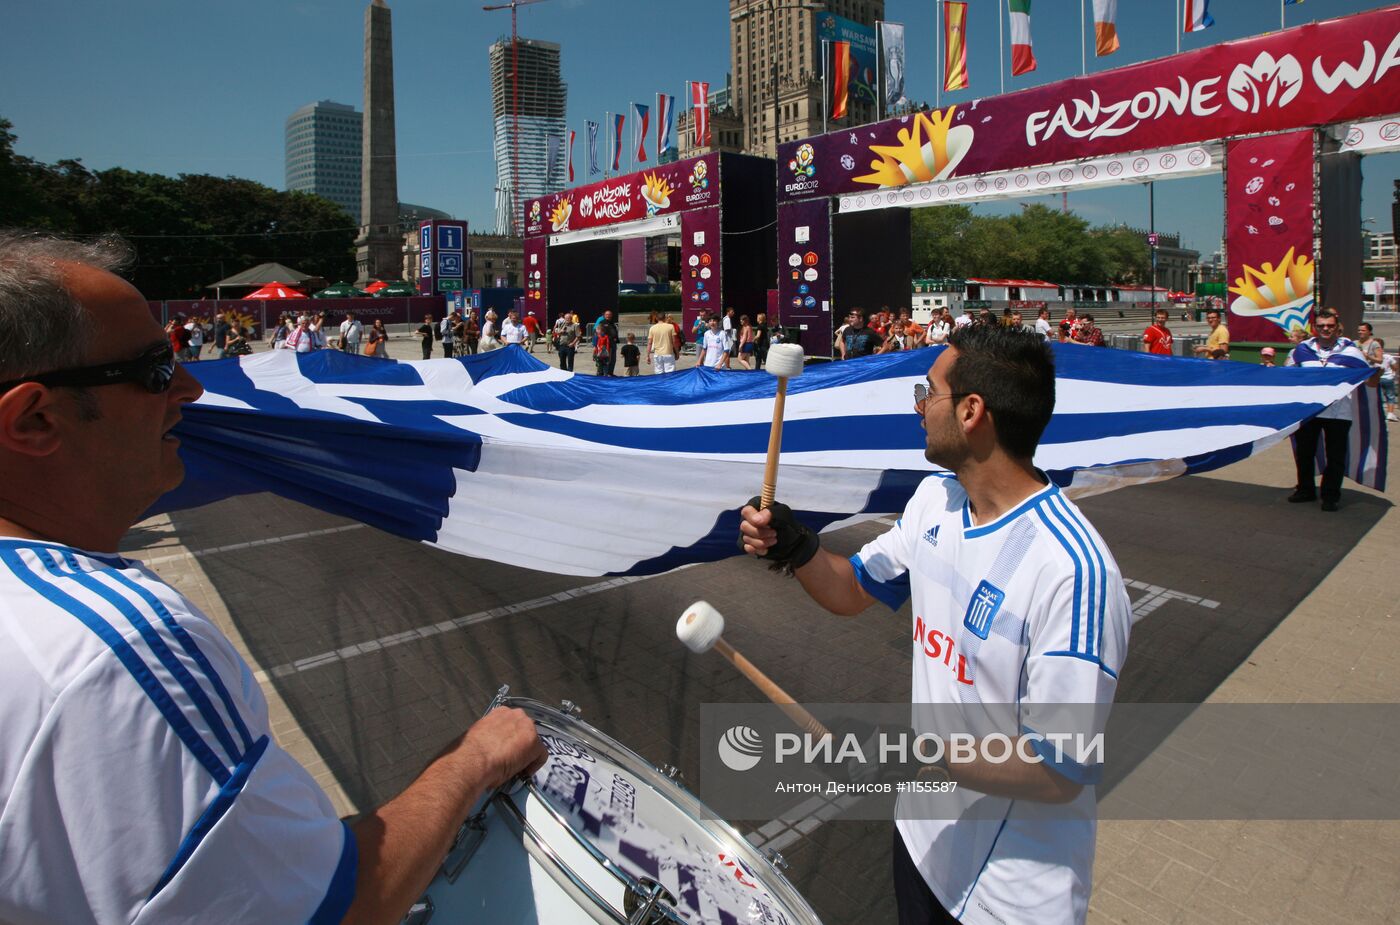 Футбольные болельщики перед матчем Греция - Россия в Варшаве